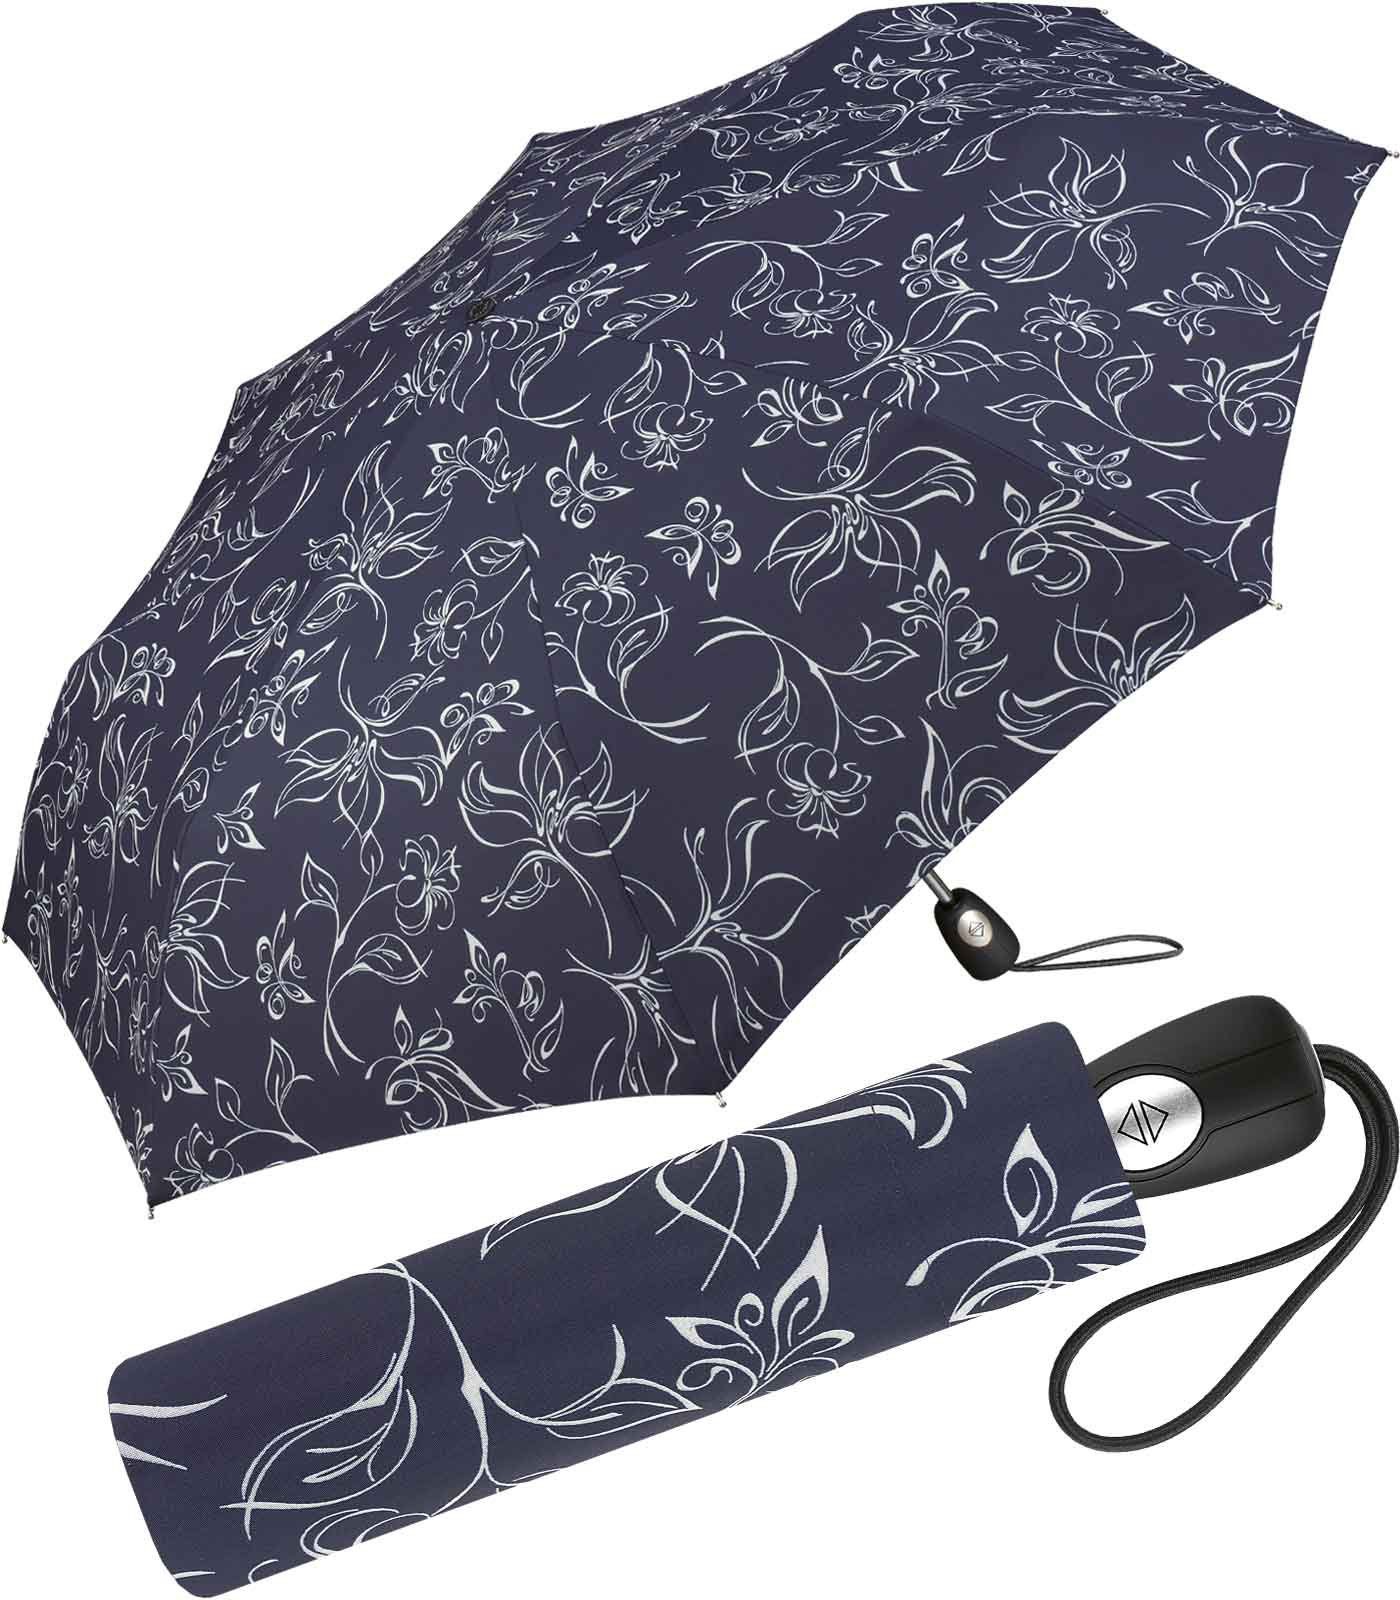 Pierre Cardin Taschenregenschirm schöner Damen-Regenschirm mit Auf-Zu-Automatik, mit wunderschönen Blumenskizzen weiß-dunkelblau | Taschenschirme